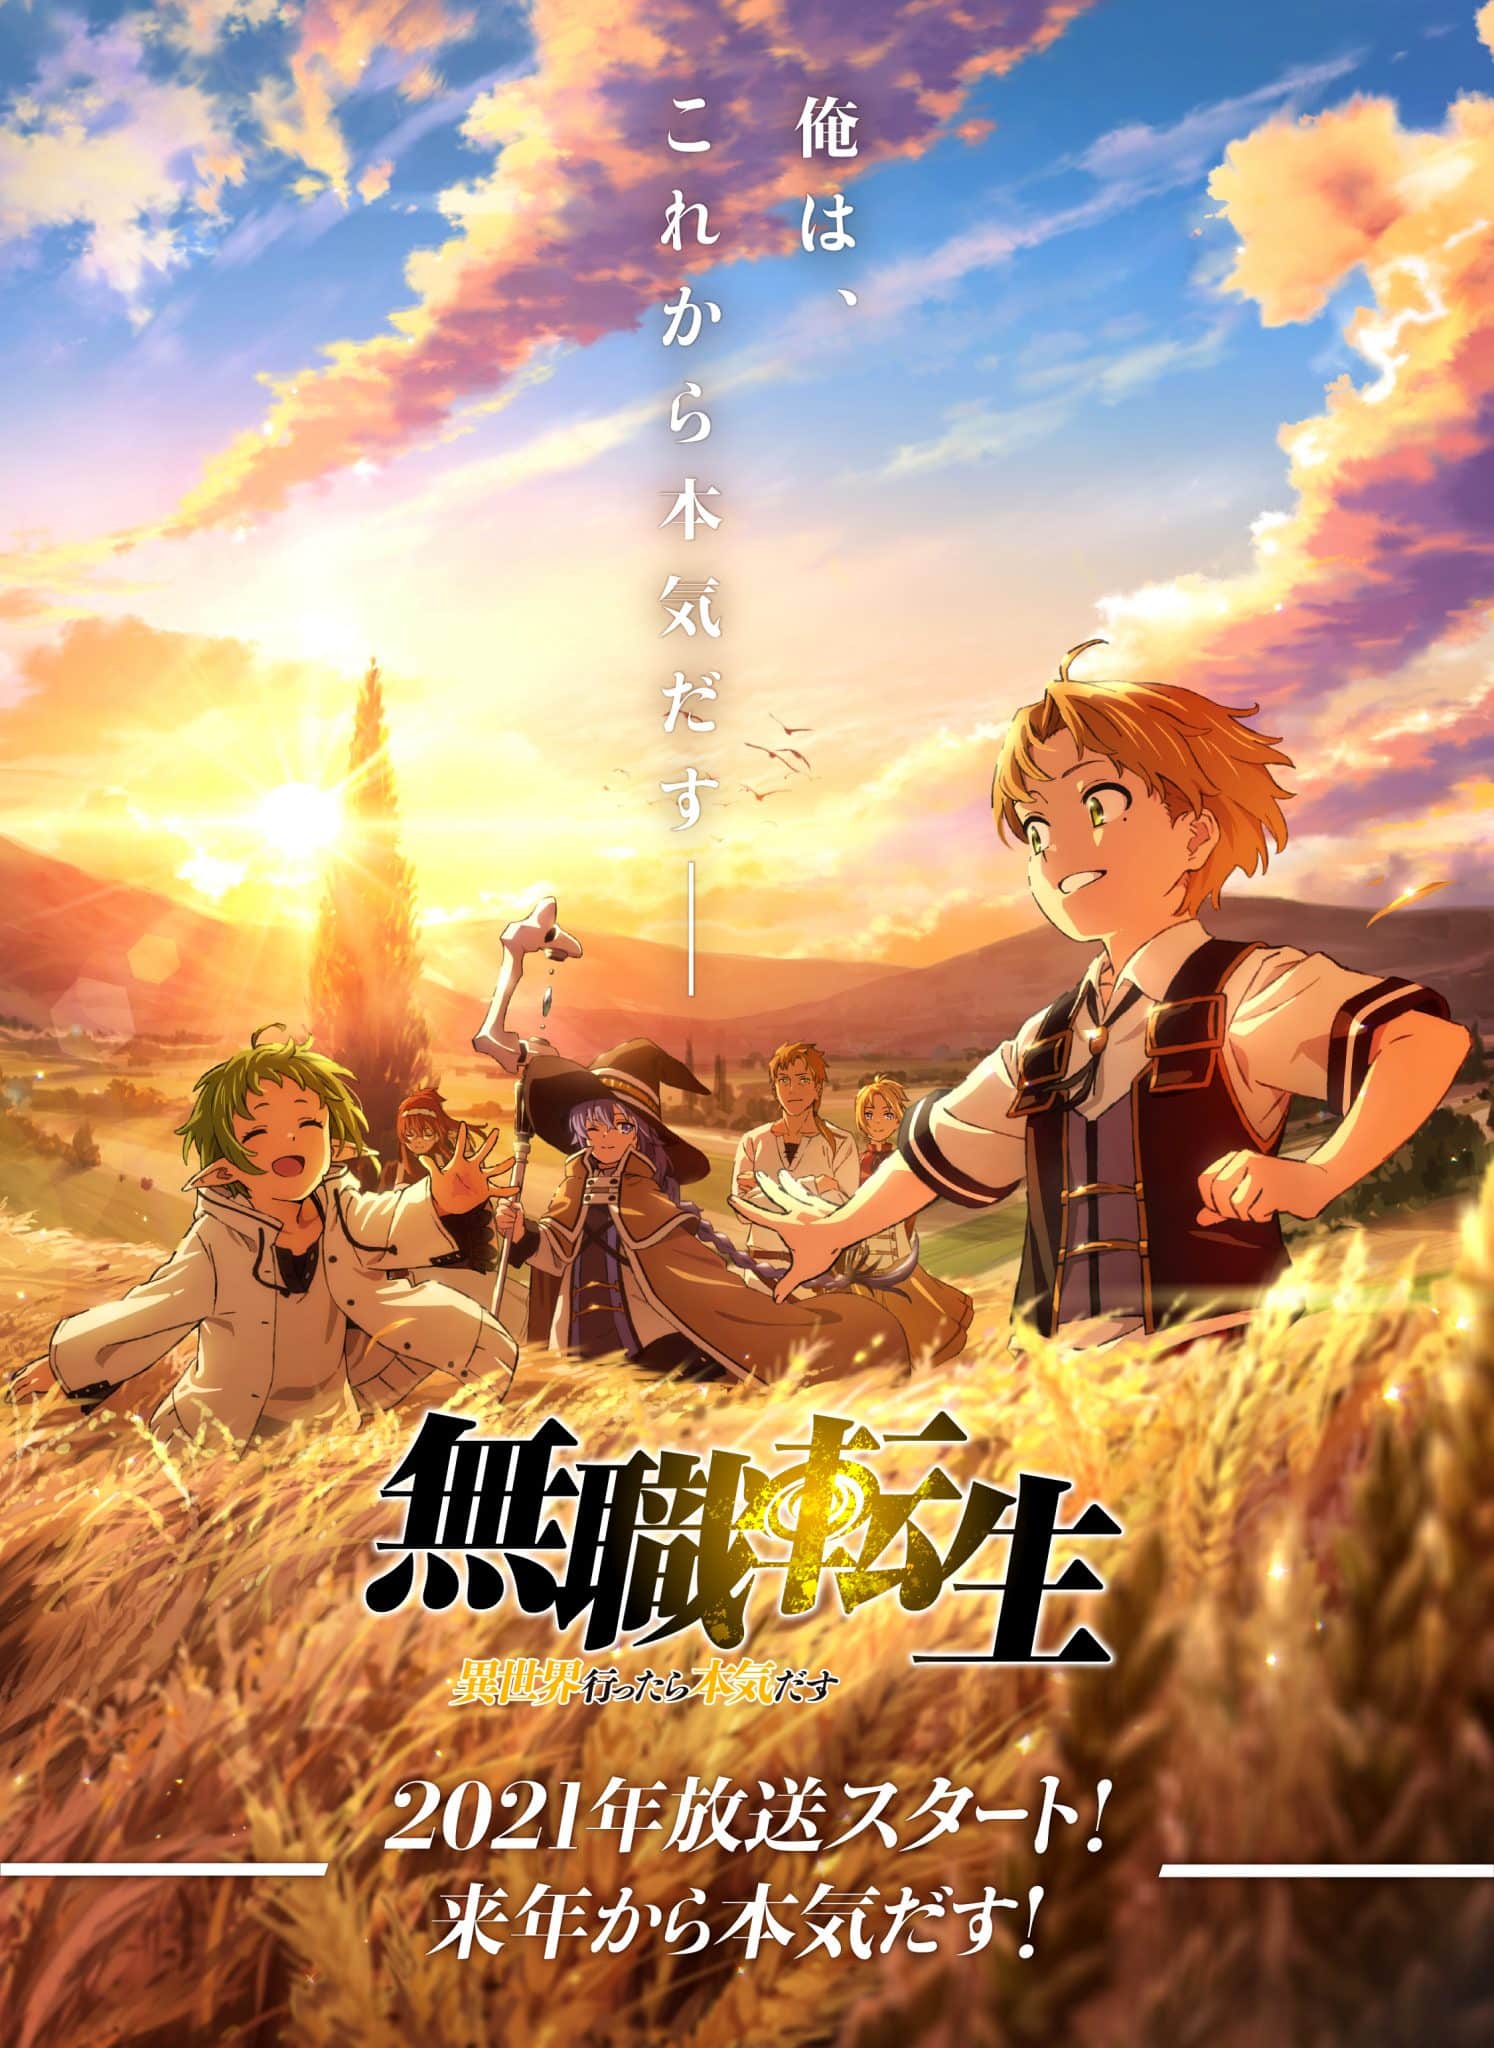 Annonce de la sortie de l'anime Mushoku Tensei pour 2021